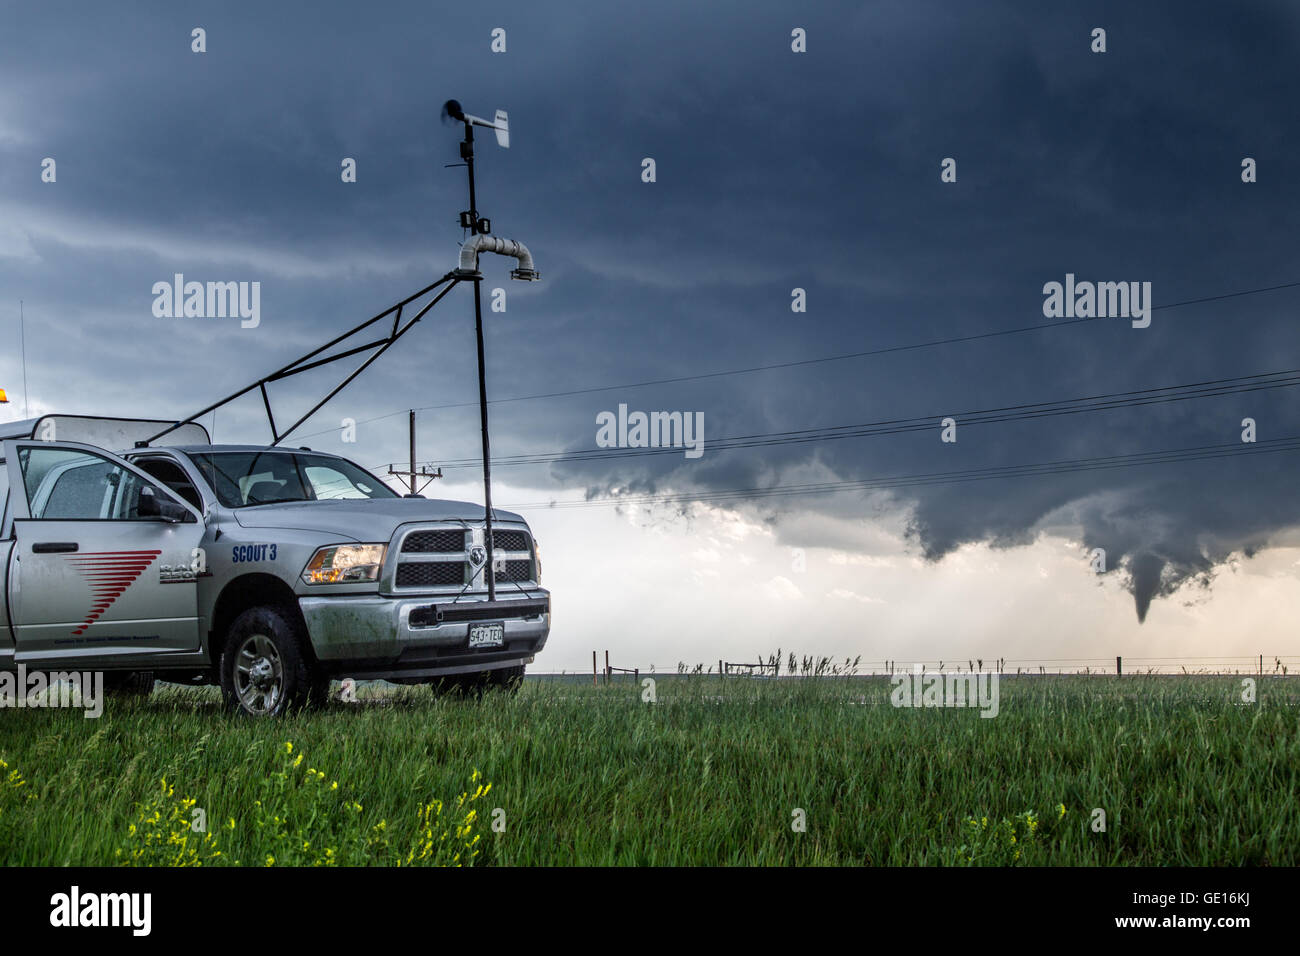 Ein Storm Chaser Wissenschaft Forschung Lkw mit CWSR Parks in der Nähe von einem sich entwickelnden Tornado in der Nähe von Dodge City, Kansas, 24. Mai 2016. Stockfoto